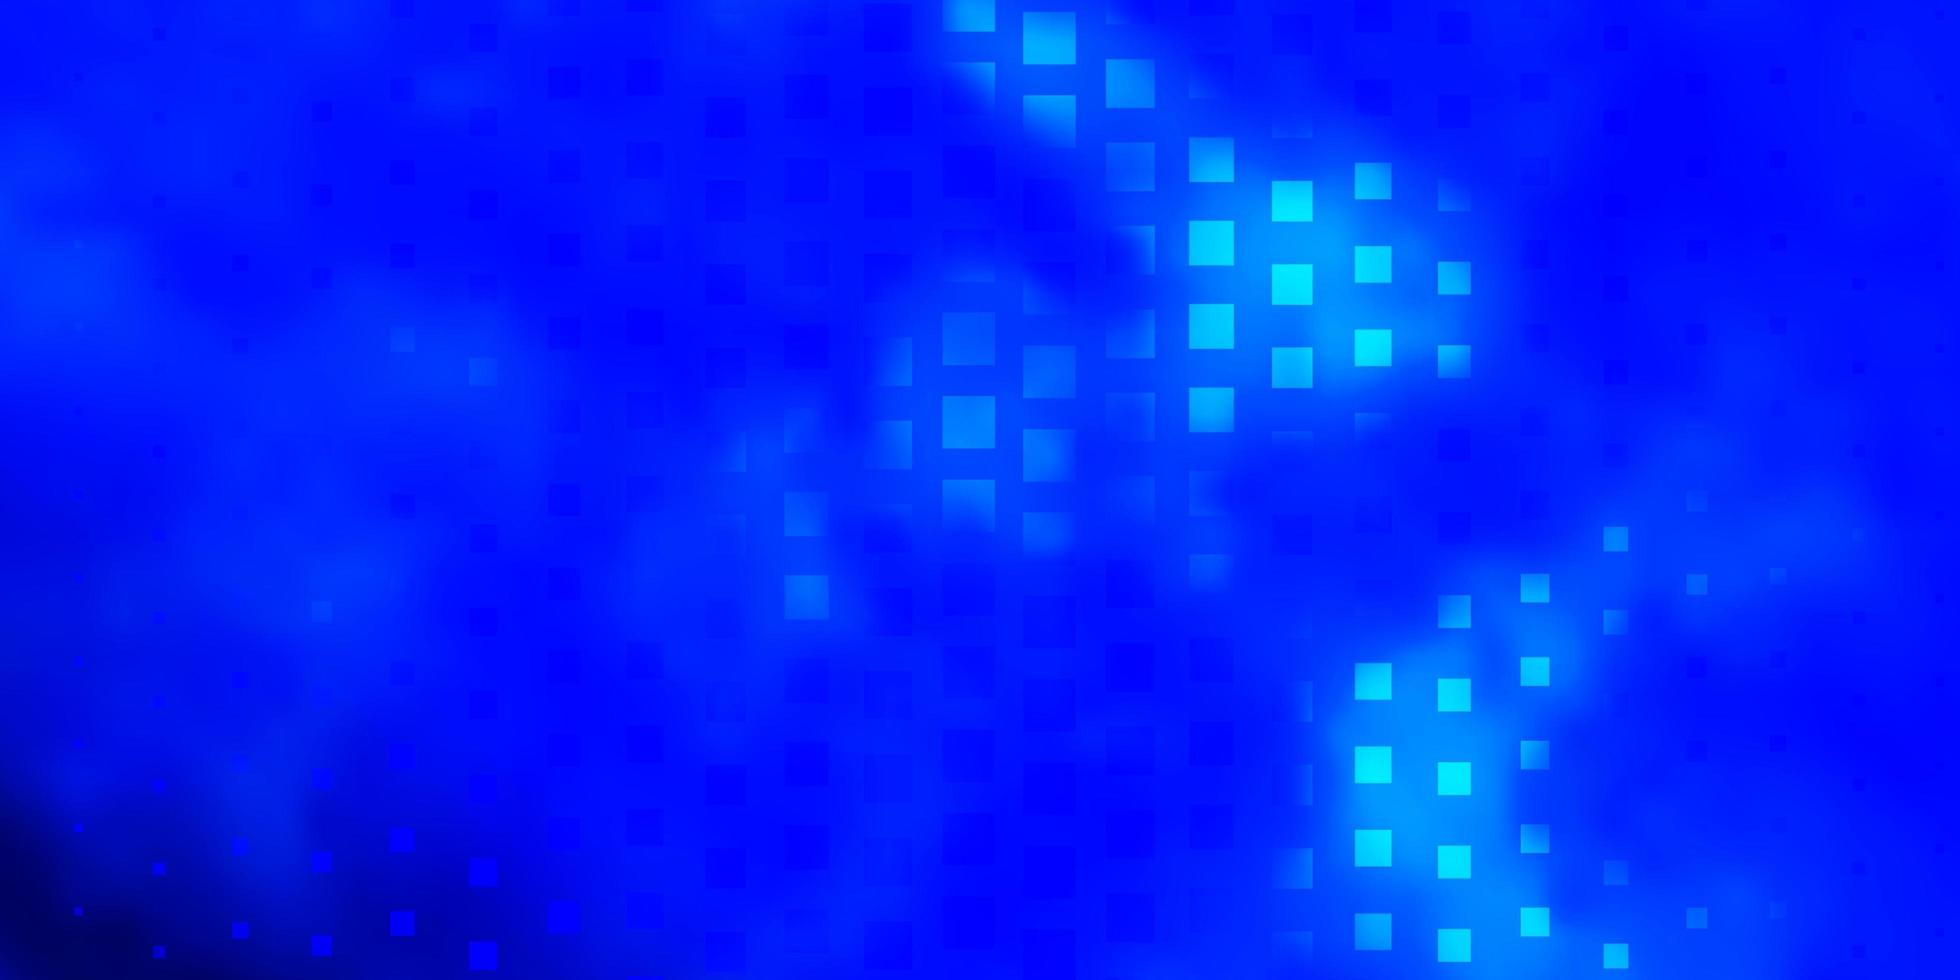 ljusblå vektorlayout med linjer, rektanglar. vektor